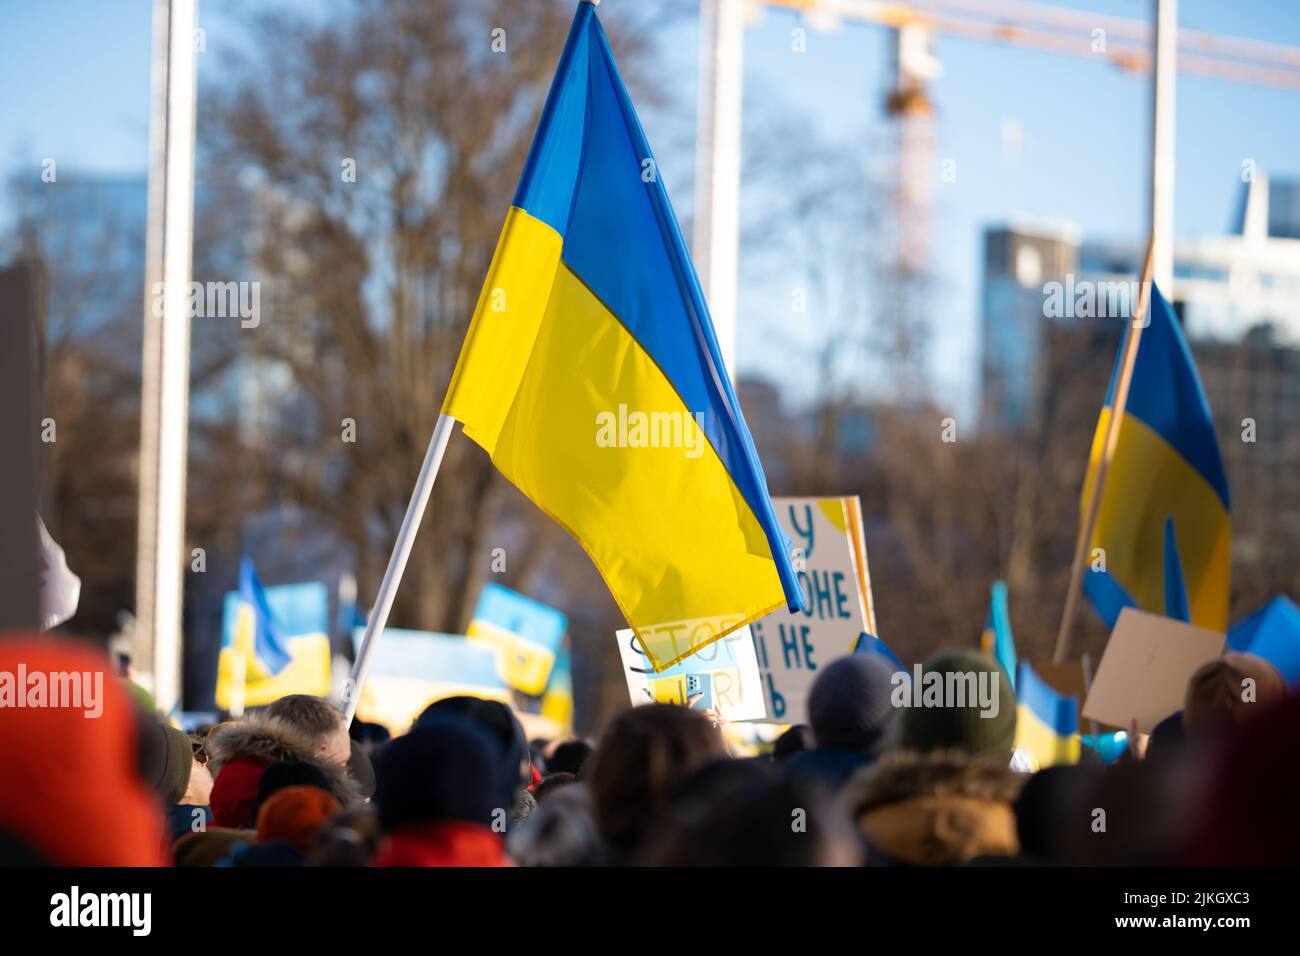 Una grande bandiera Ucraina che sventola in una folla di persone all'aperto durante una protesta Foto Stock